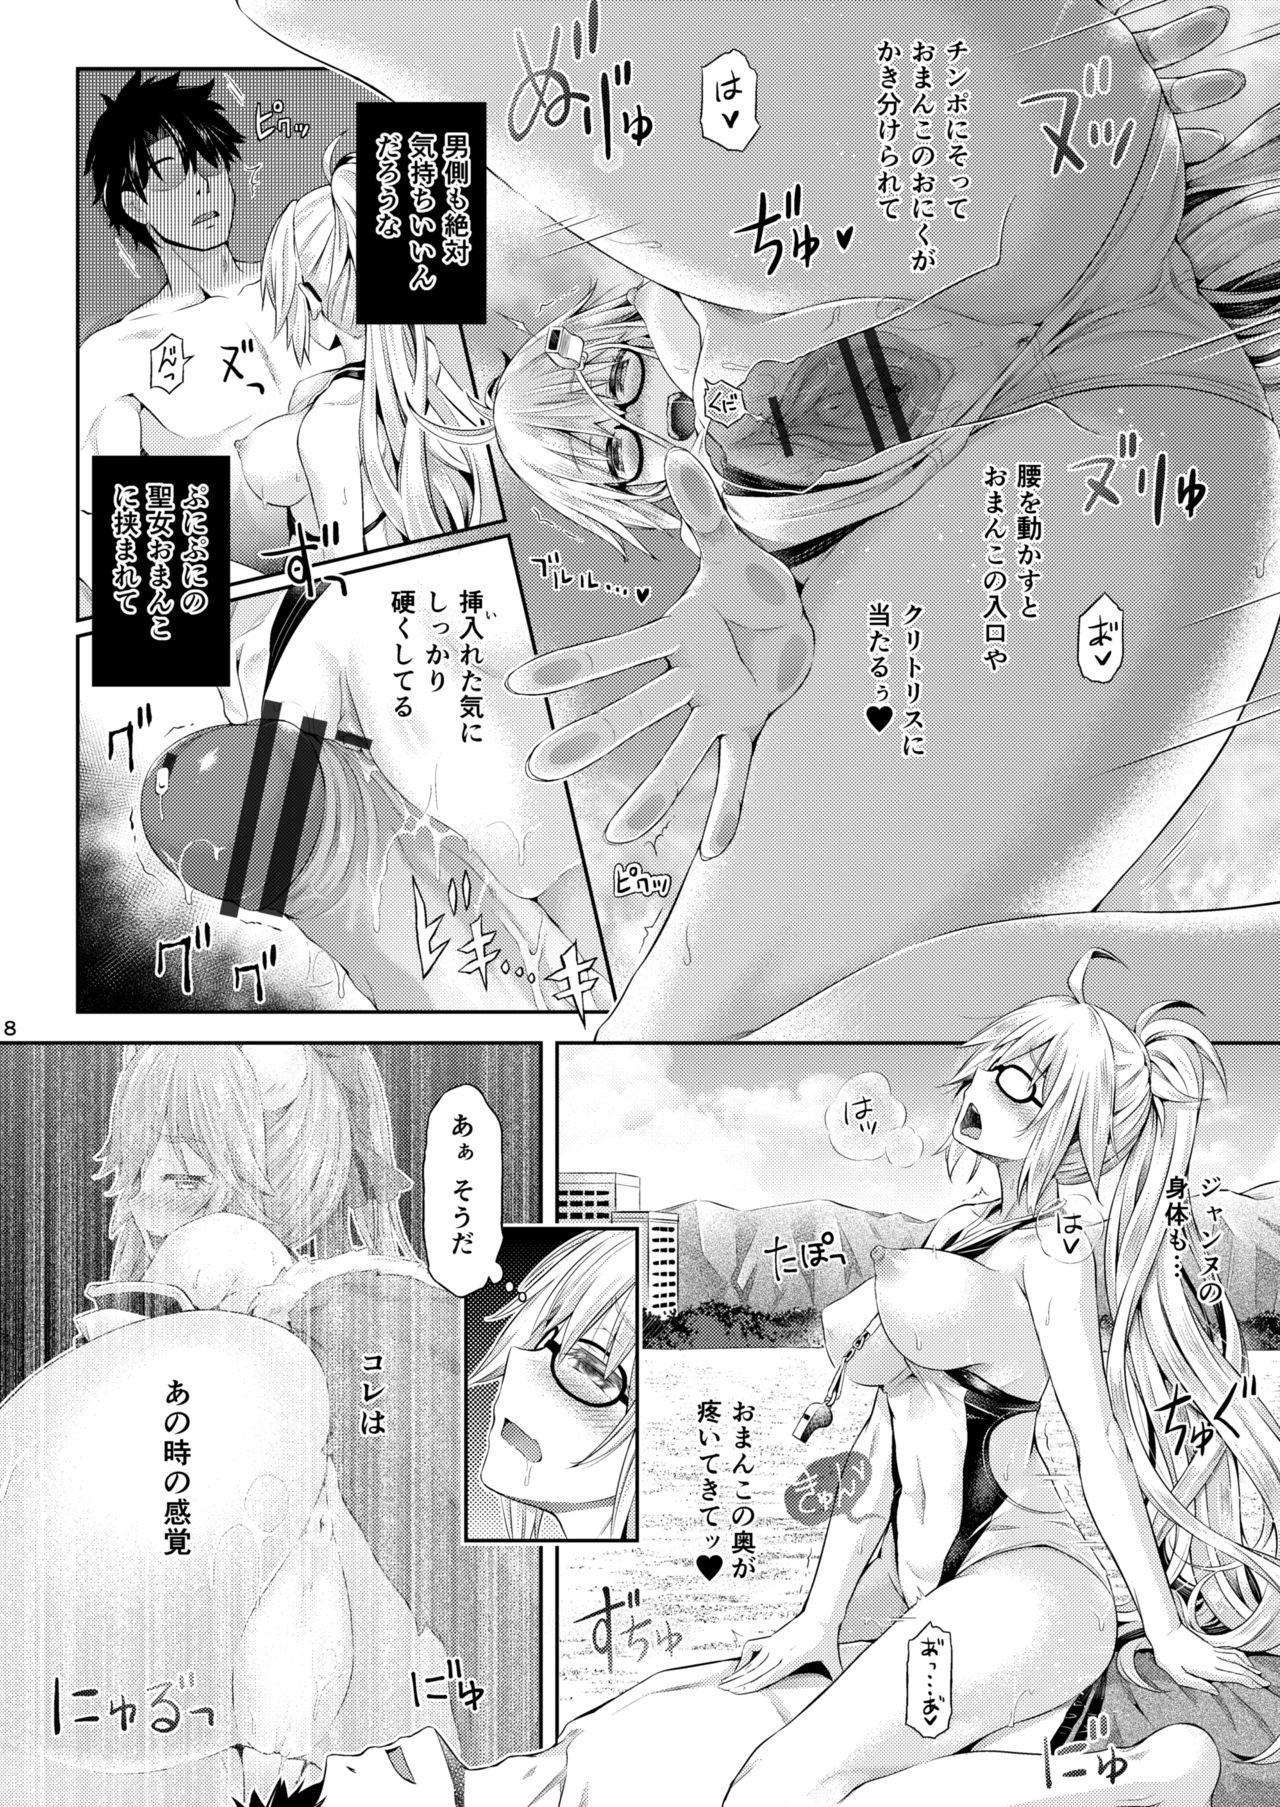 [Taniguchi-san] Kimi -Jeanne- ni Naru 2.0 (Fate/Grand Order) 8